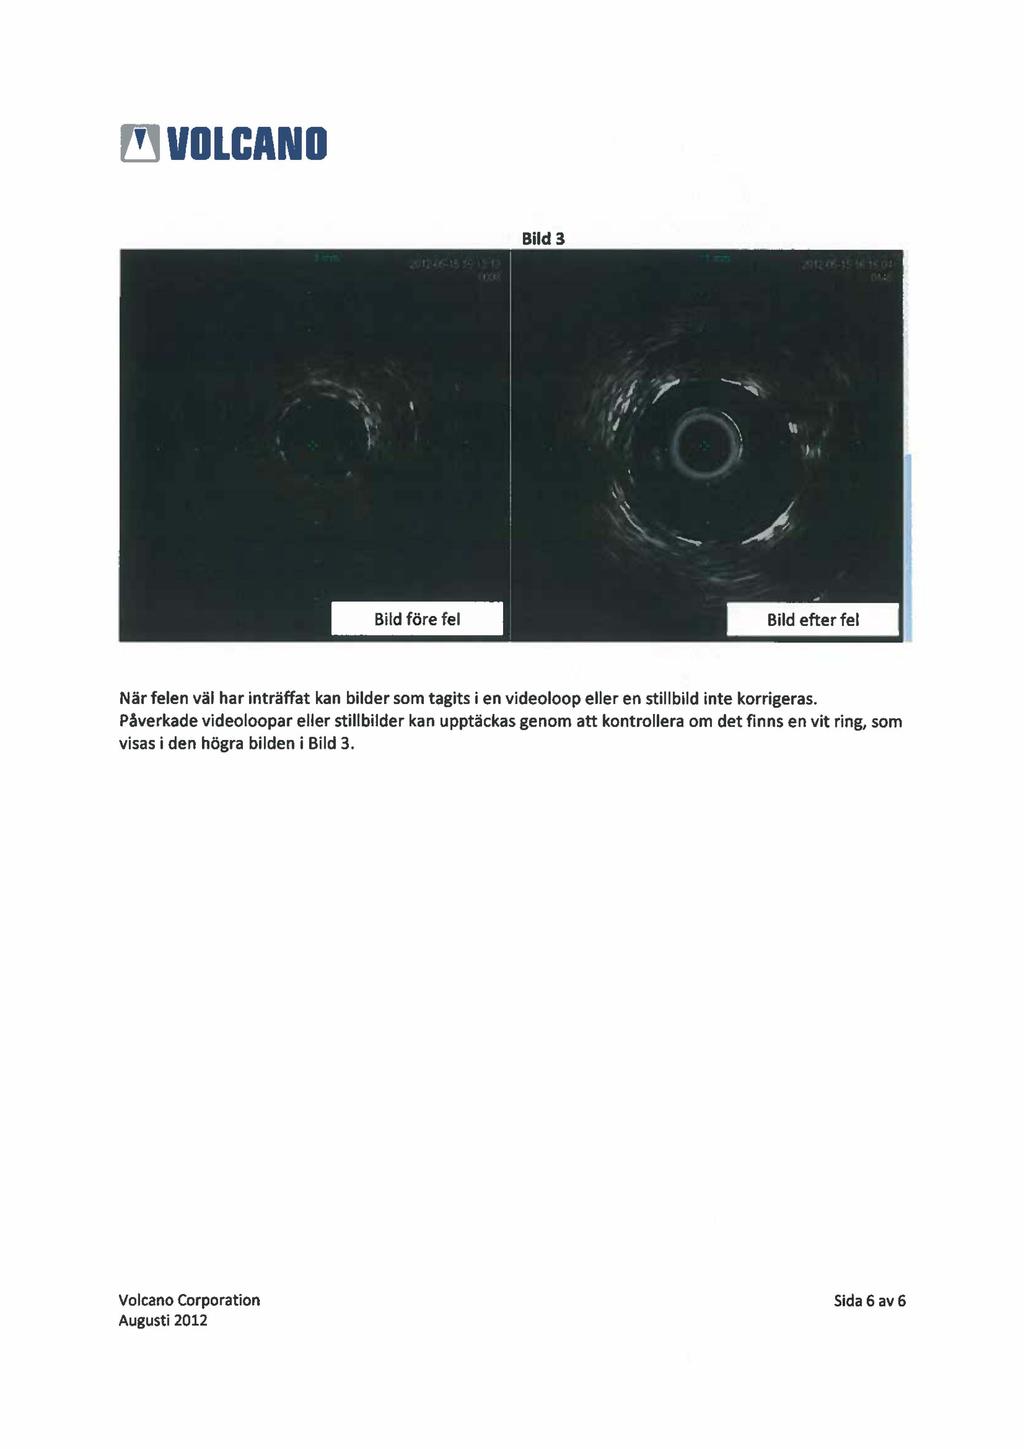 Bild 3 När felen väl har inträffat kan bilder som tagits i en videoloop eller en stillbild inte korrigeras.